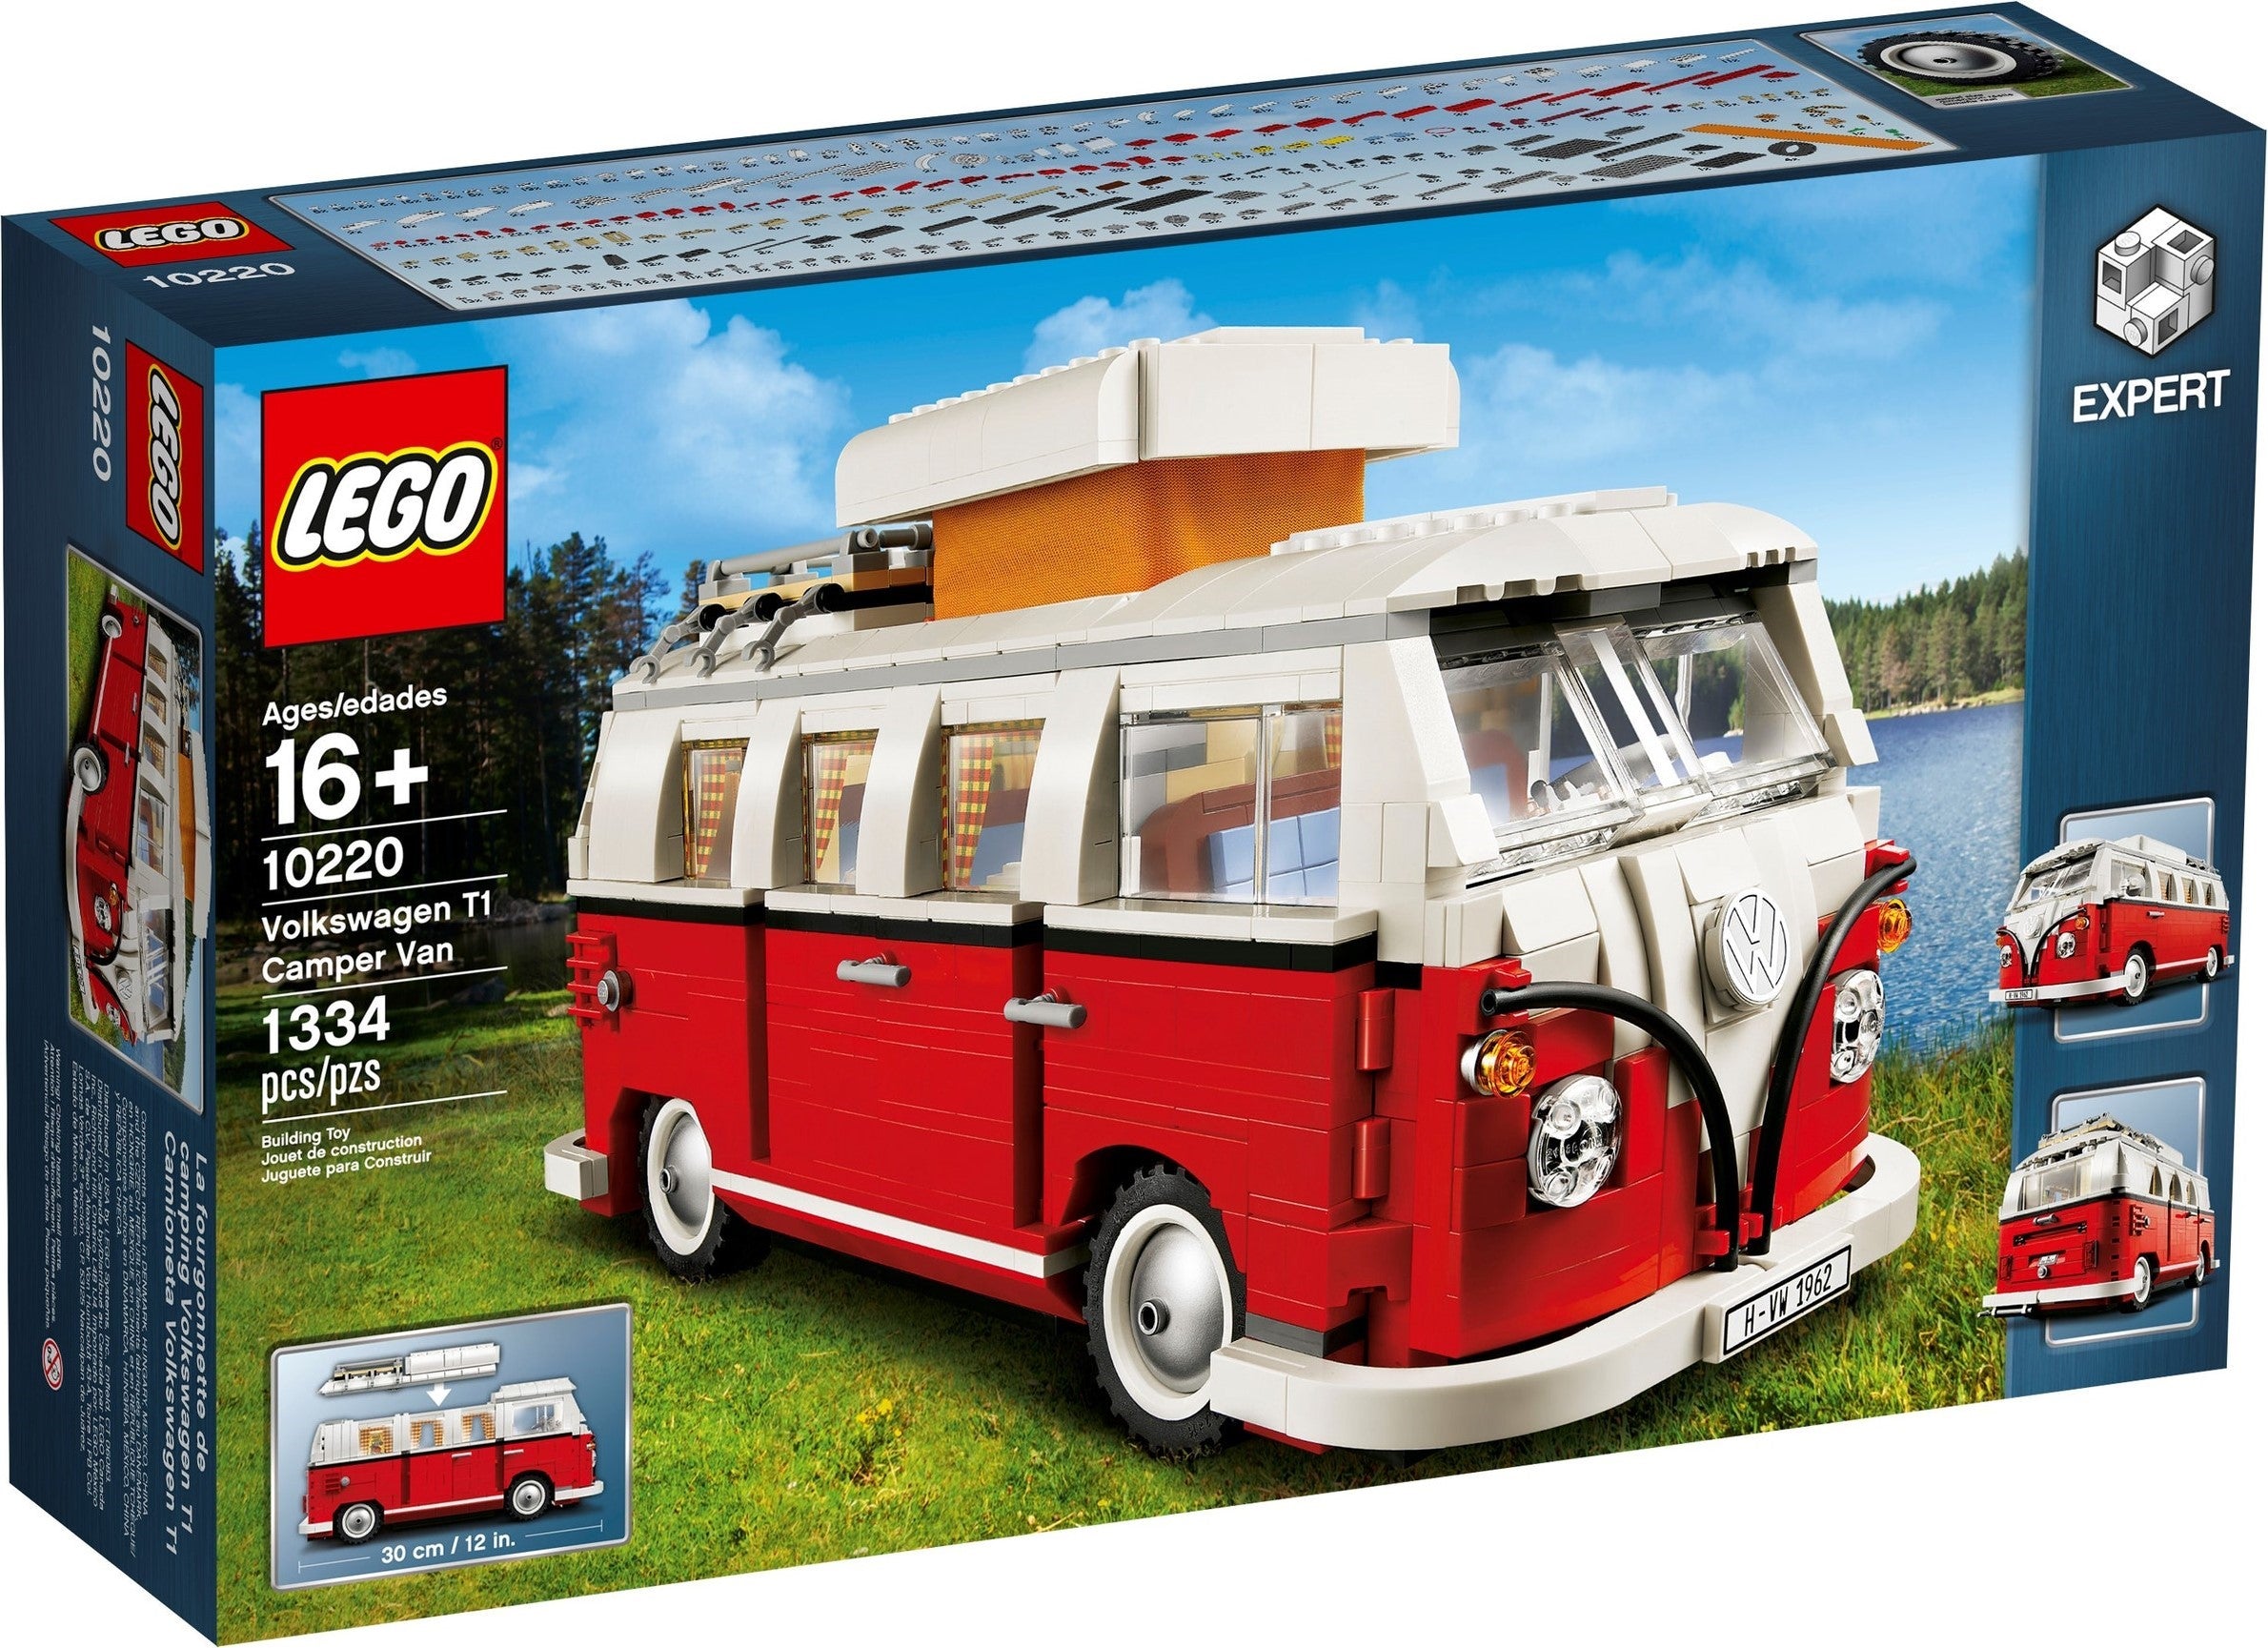 Lego Creator Expert 10220 - Volkswagen T1 Camper Van